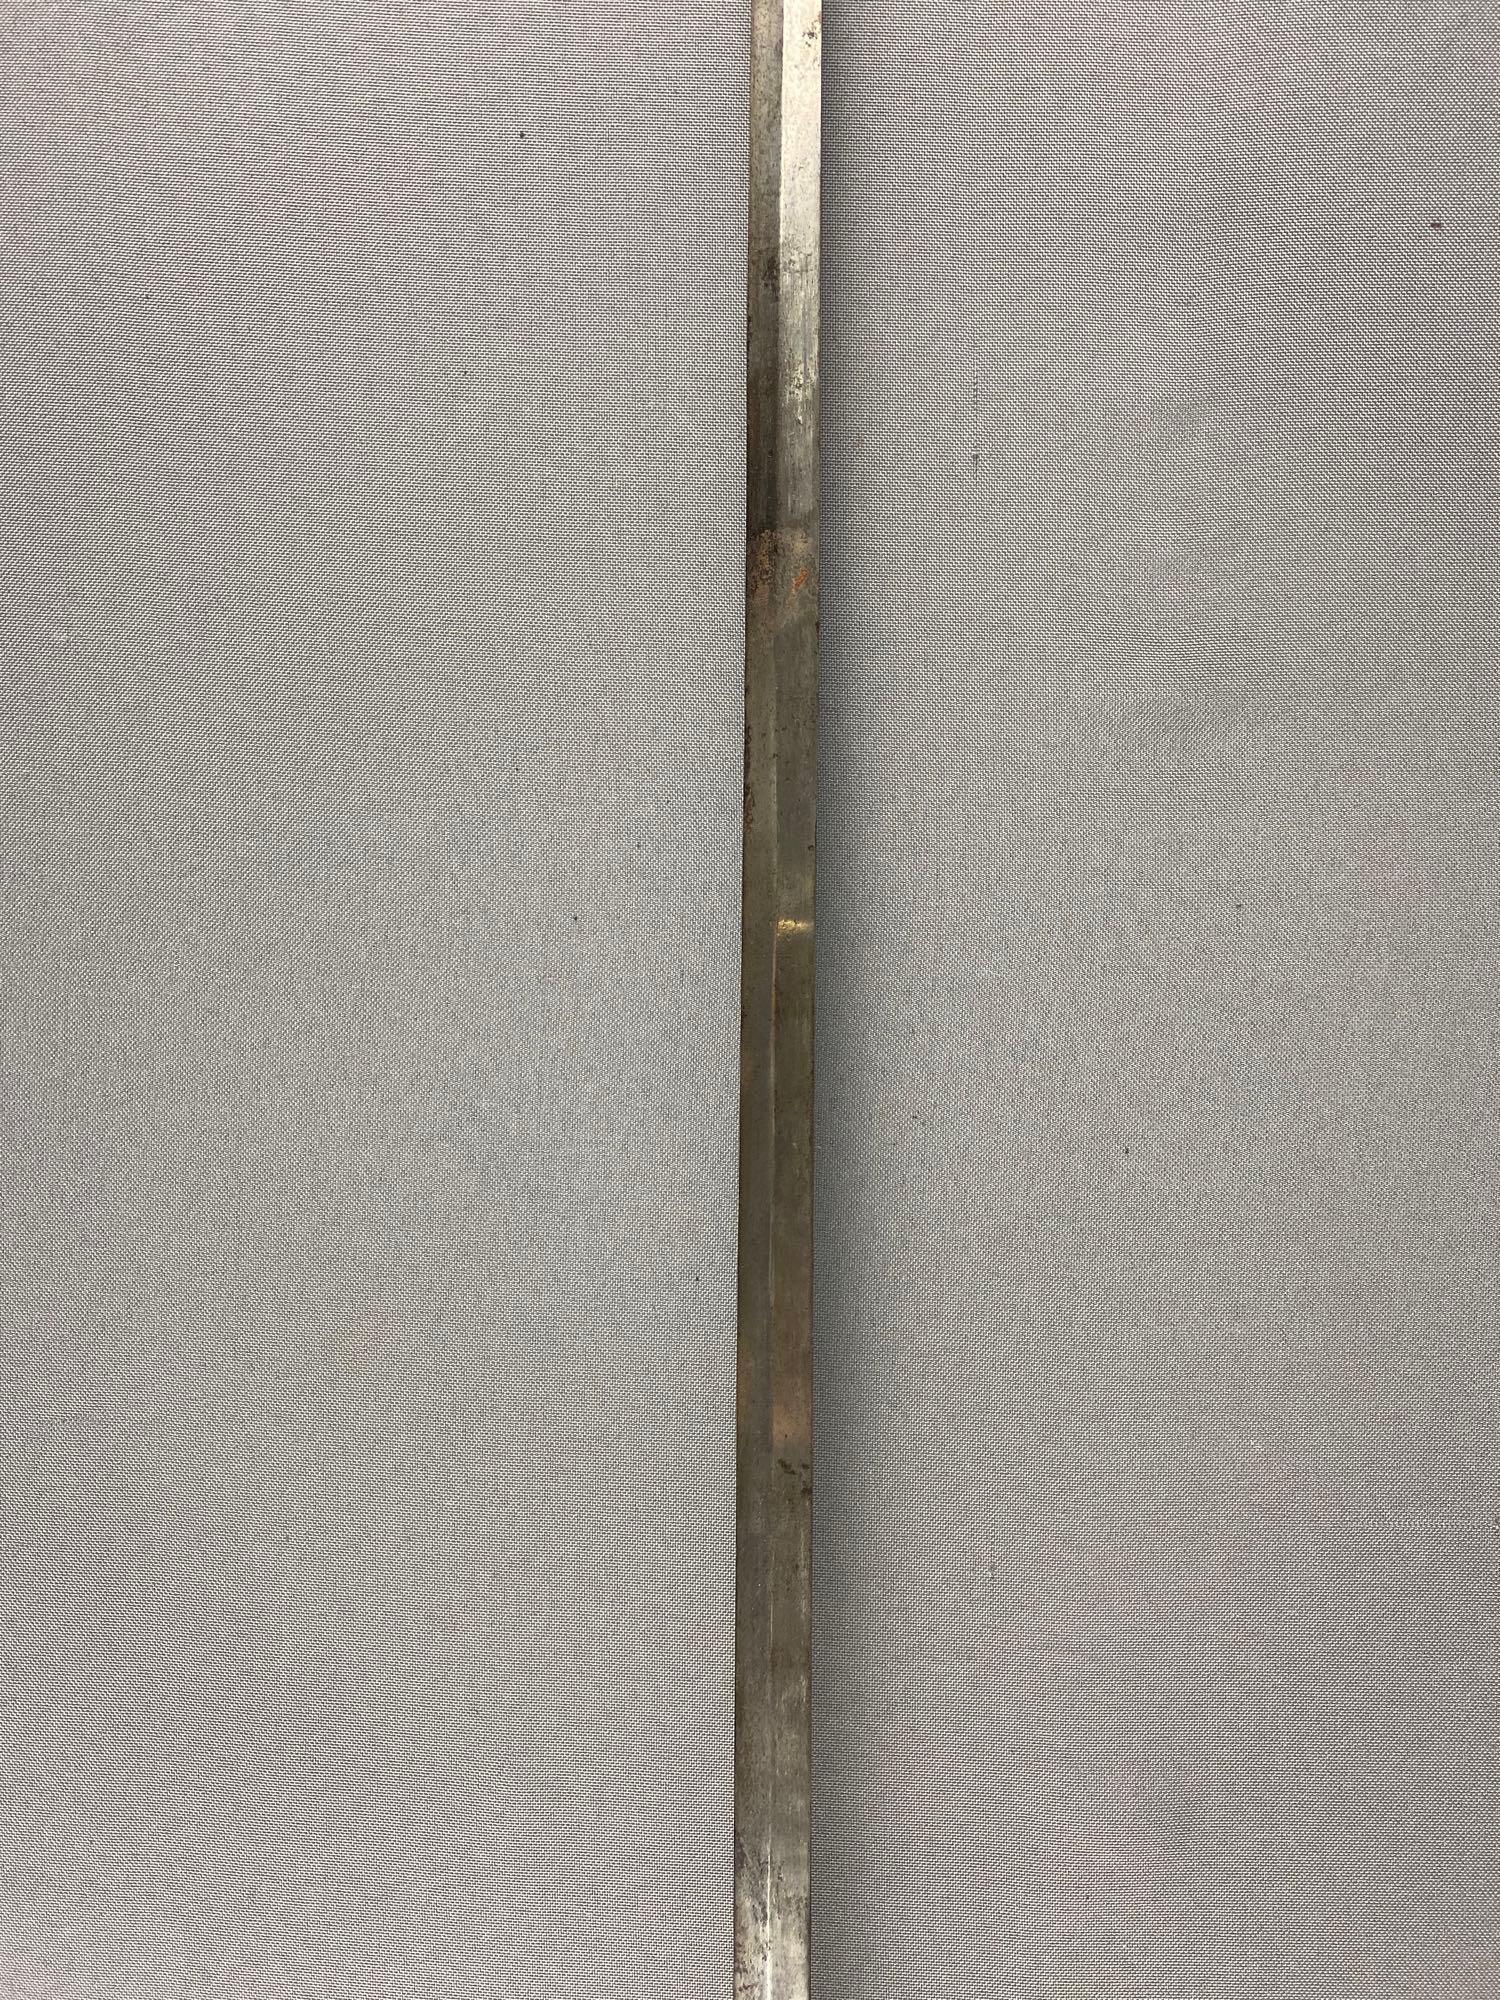 Antique German Rapier Sword